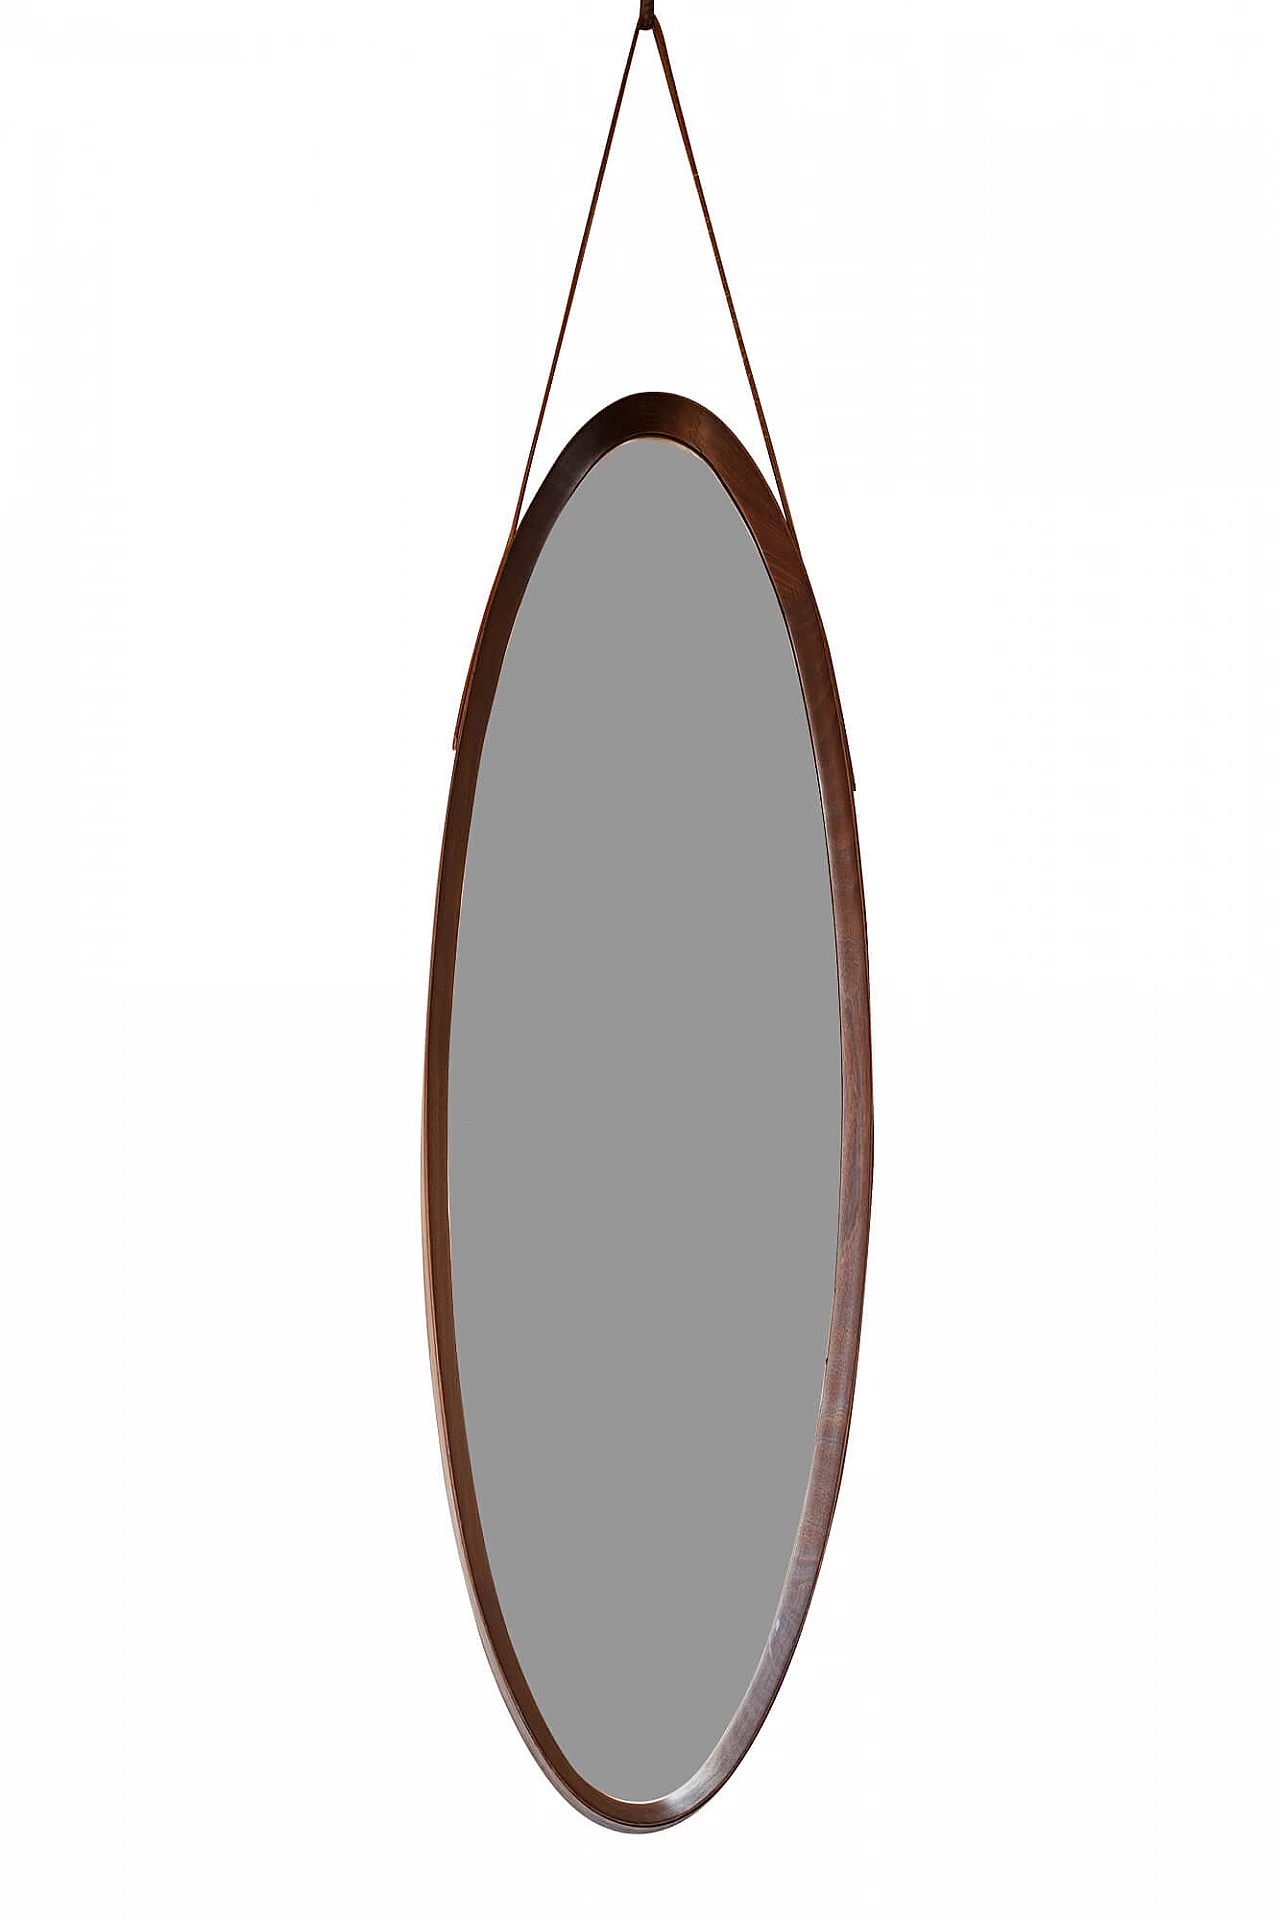 Specchio ovale con cornice in teak, anni '50 1228776